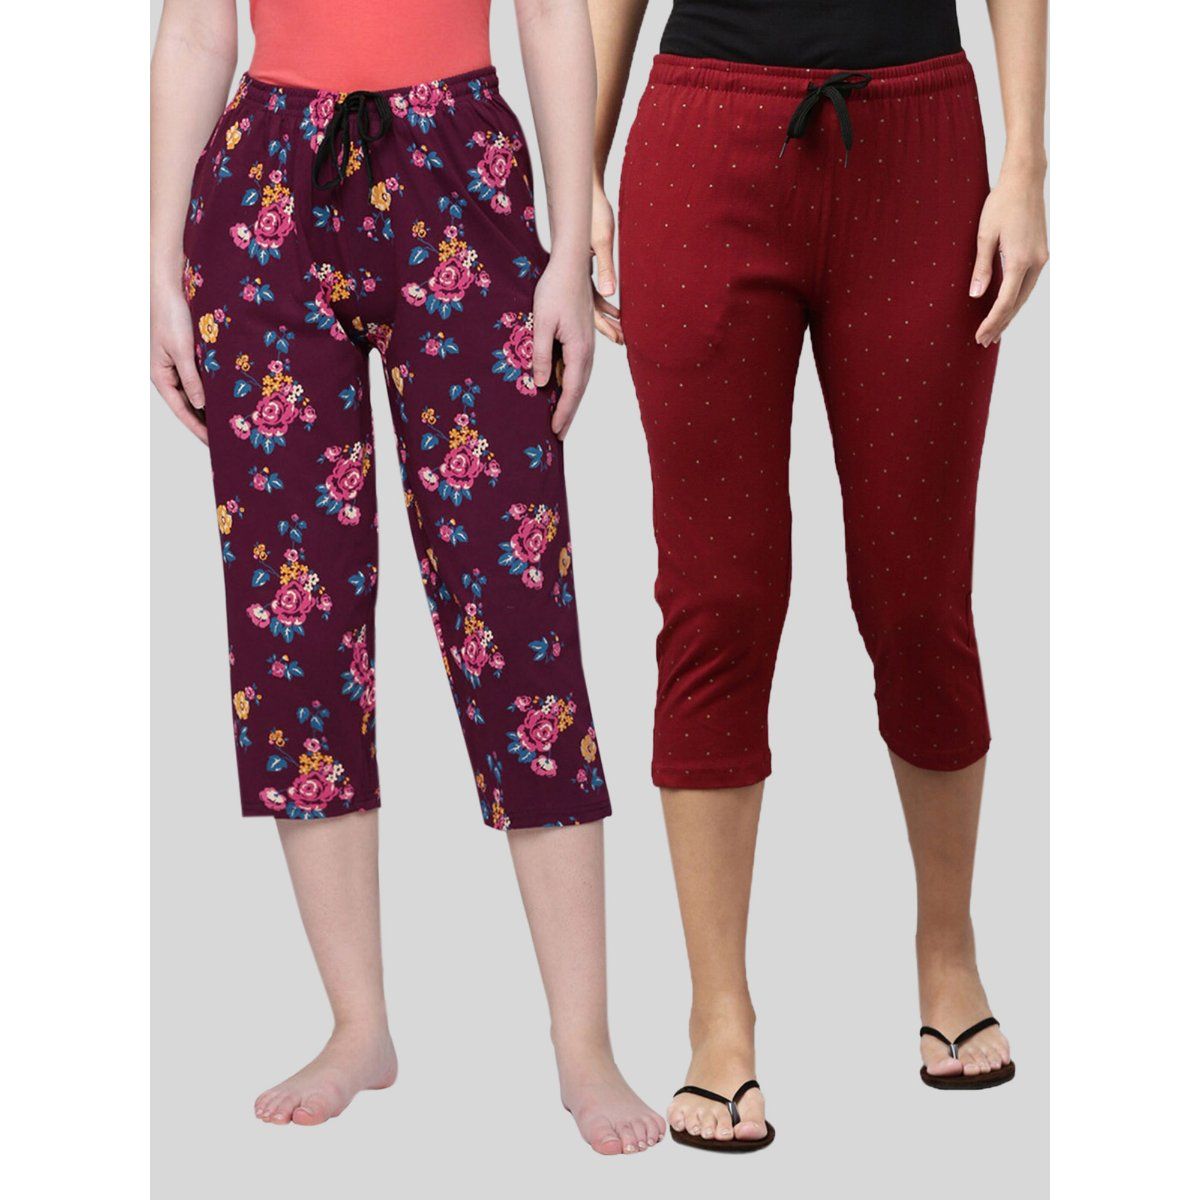 Buy Kryptic Women Maroon & Pink Printed Regular Fit Cotton Capris (Pack of  2) online